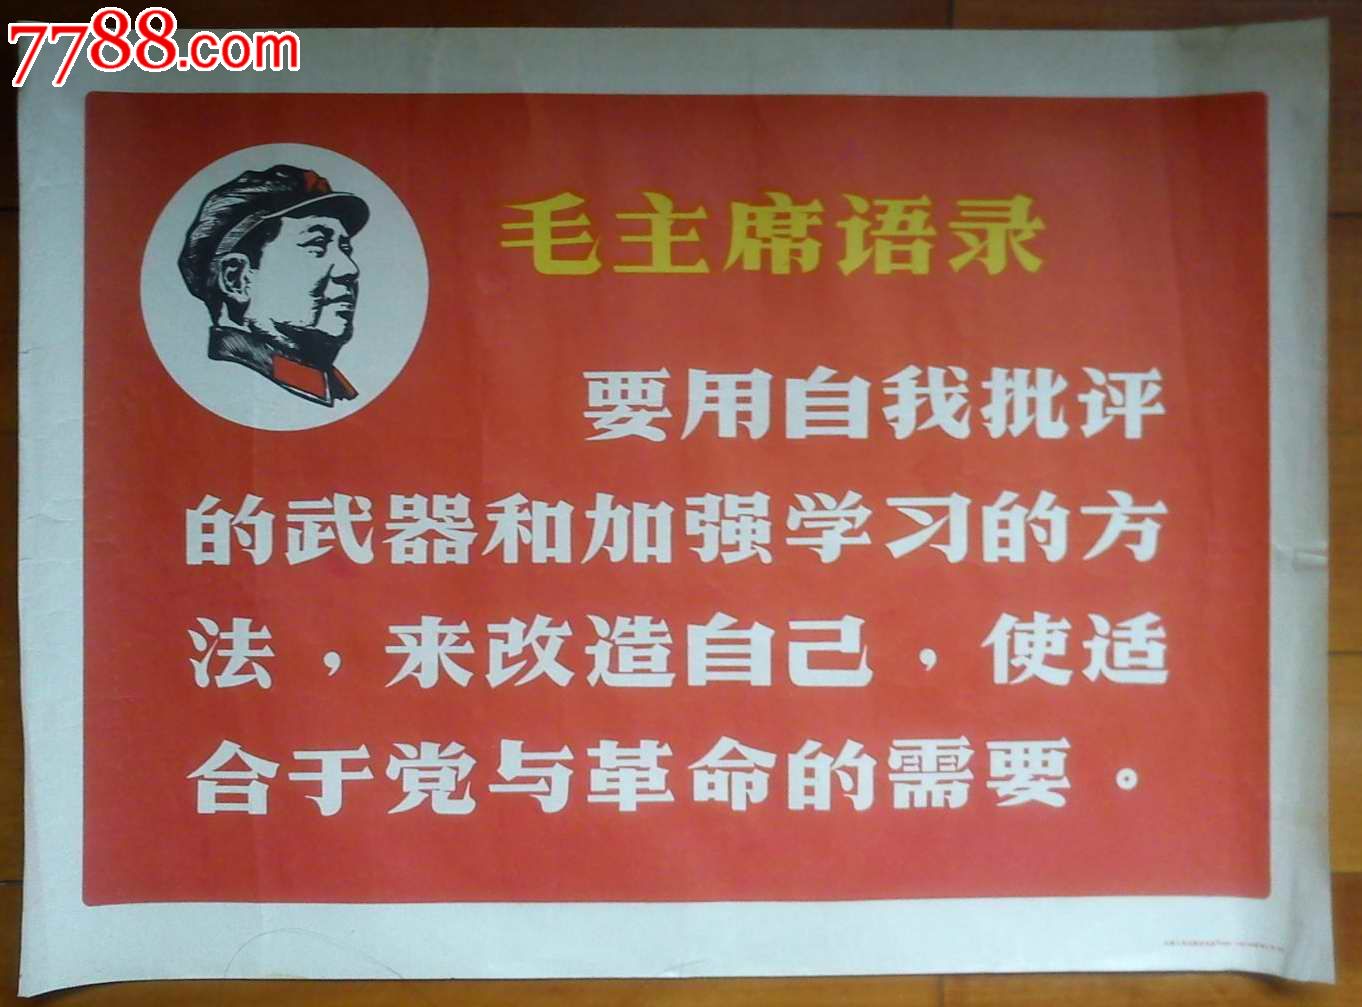 毛主席语录,电影海报,绘画稿印刷,其他类型影片,电影海报,其他地域影片,文革期间(1967年-1976年),四开,单张,se17931653,零售,中国收藏热线